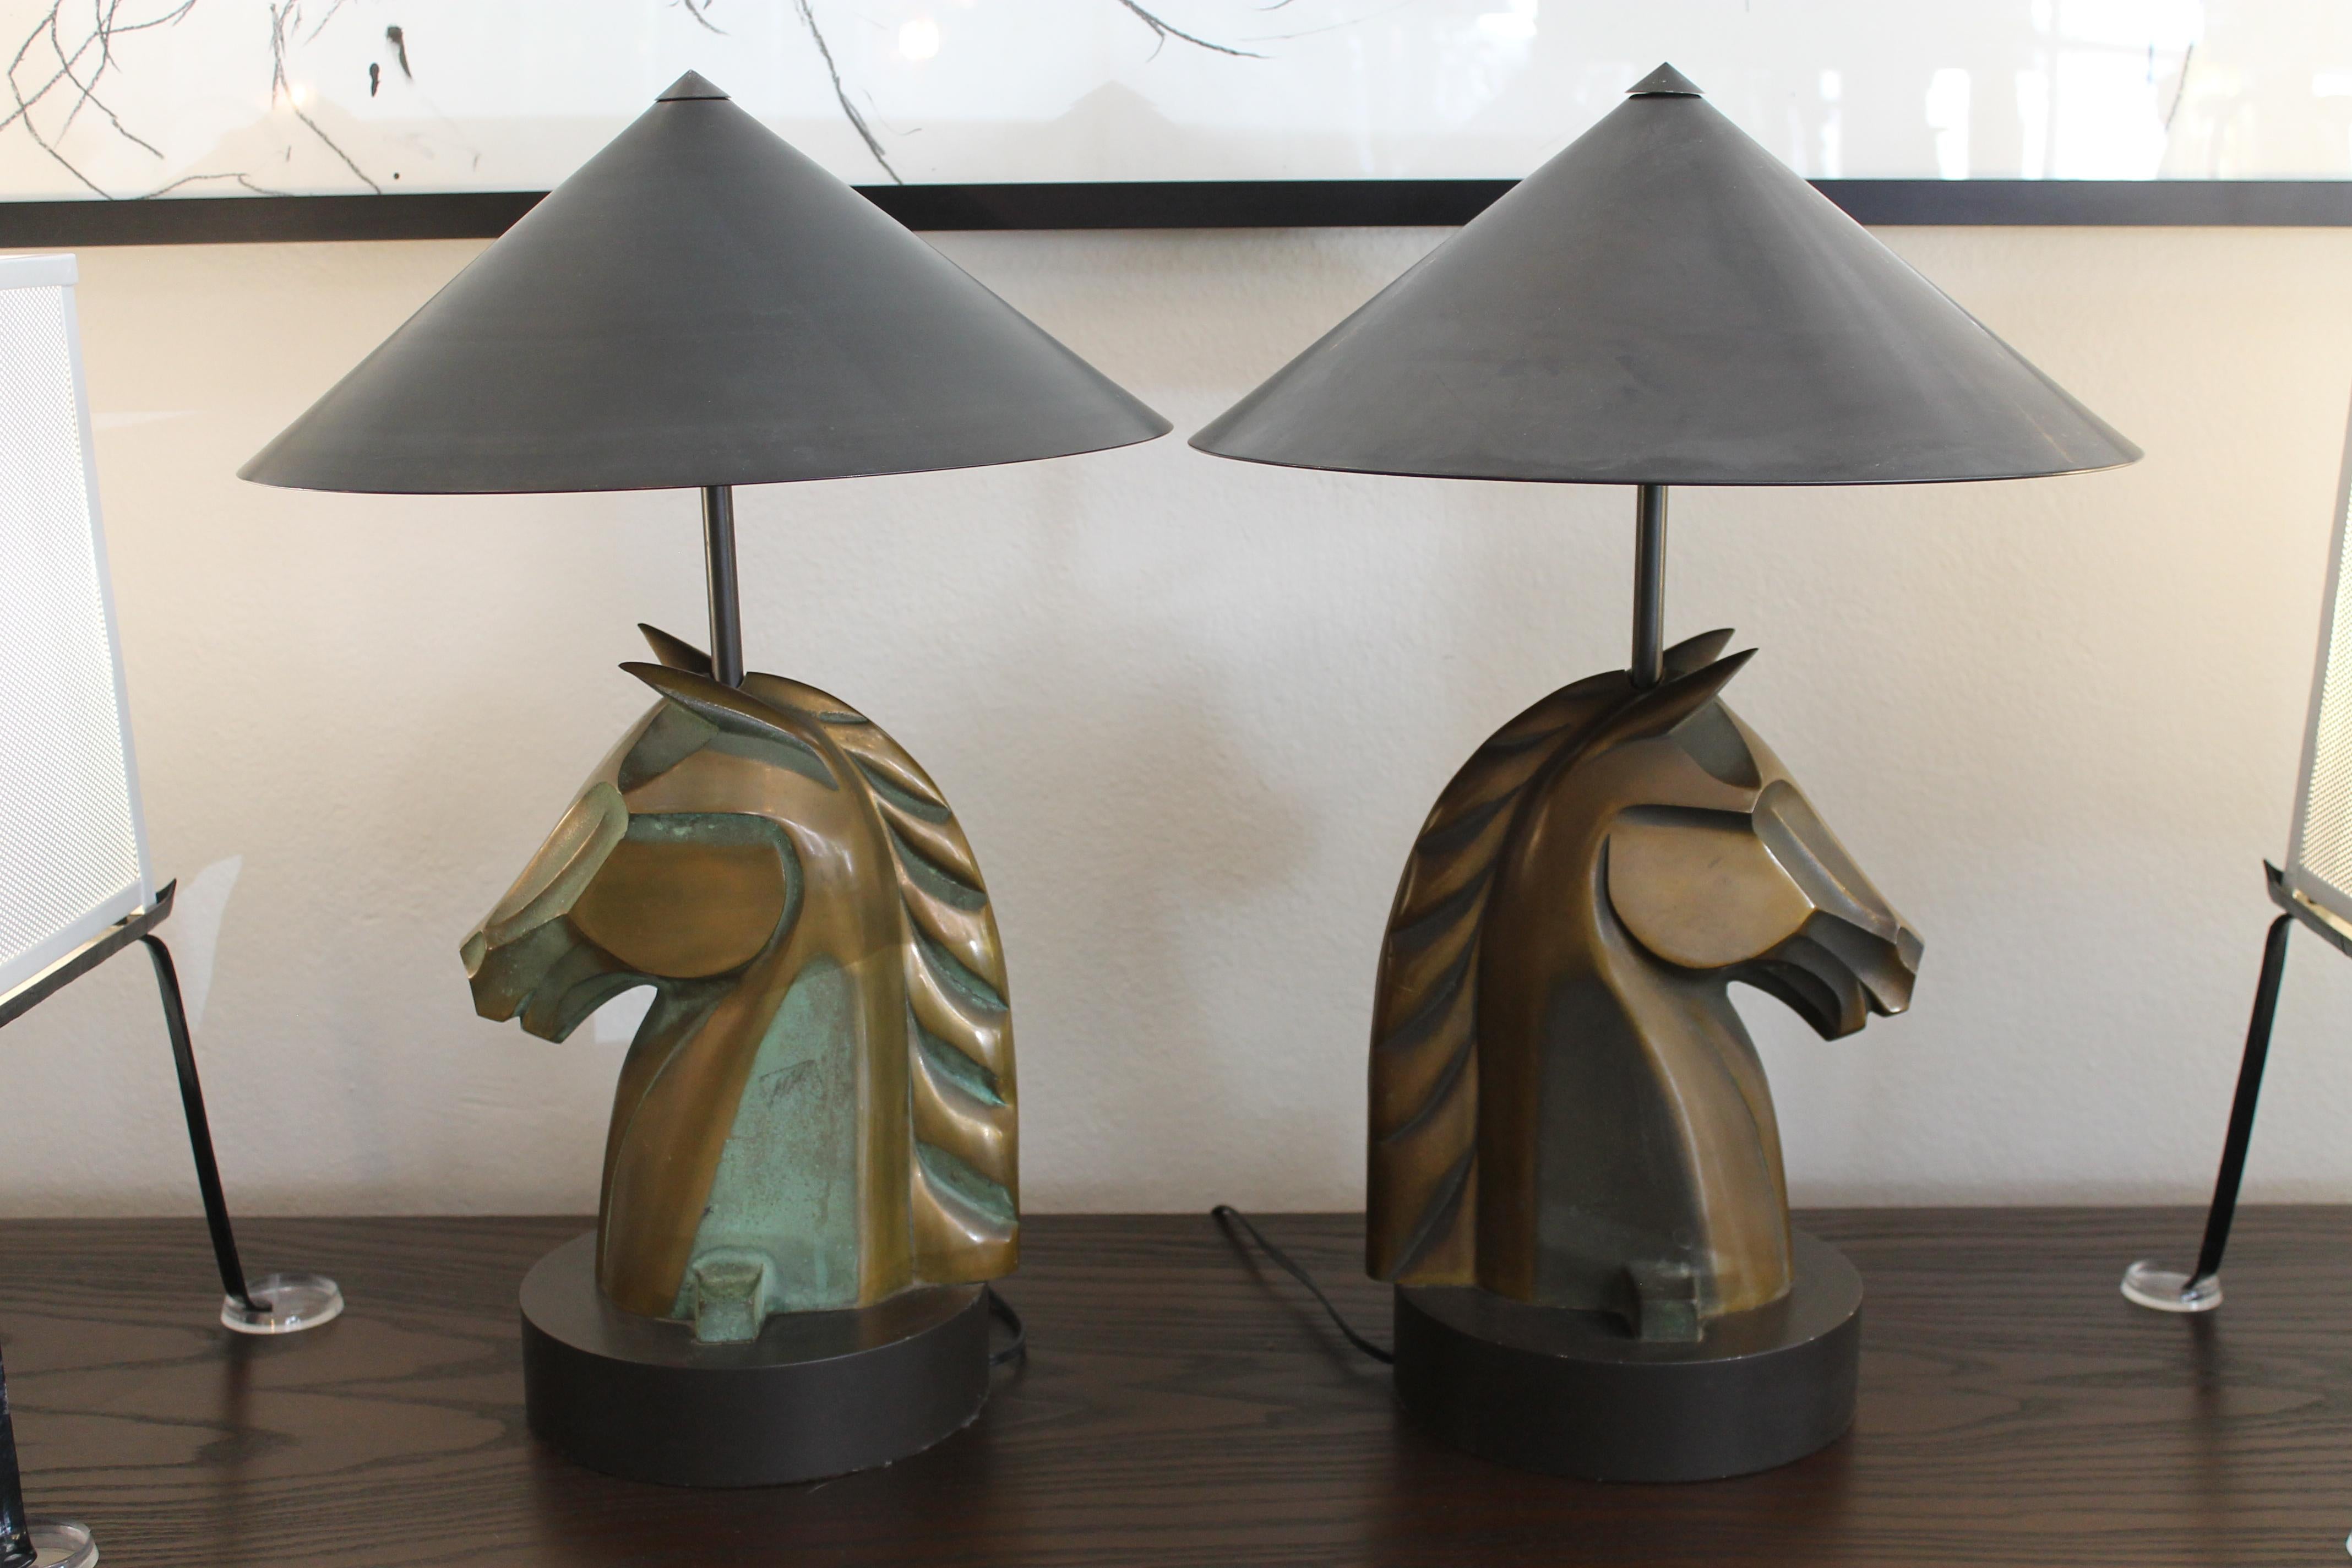 Paire de lampes à tête de cheval en bronze sur des bases en acier noir. La base a un diamètre de 8